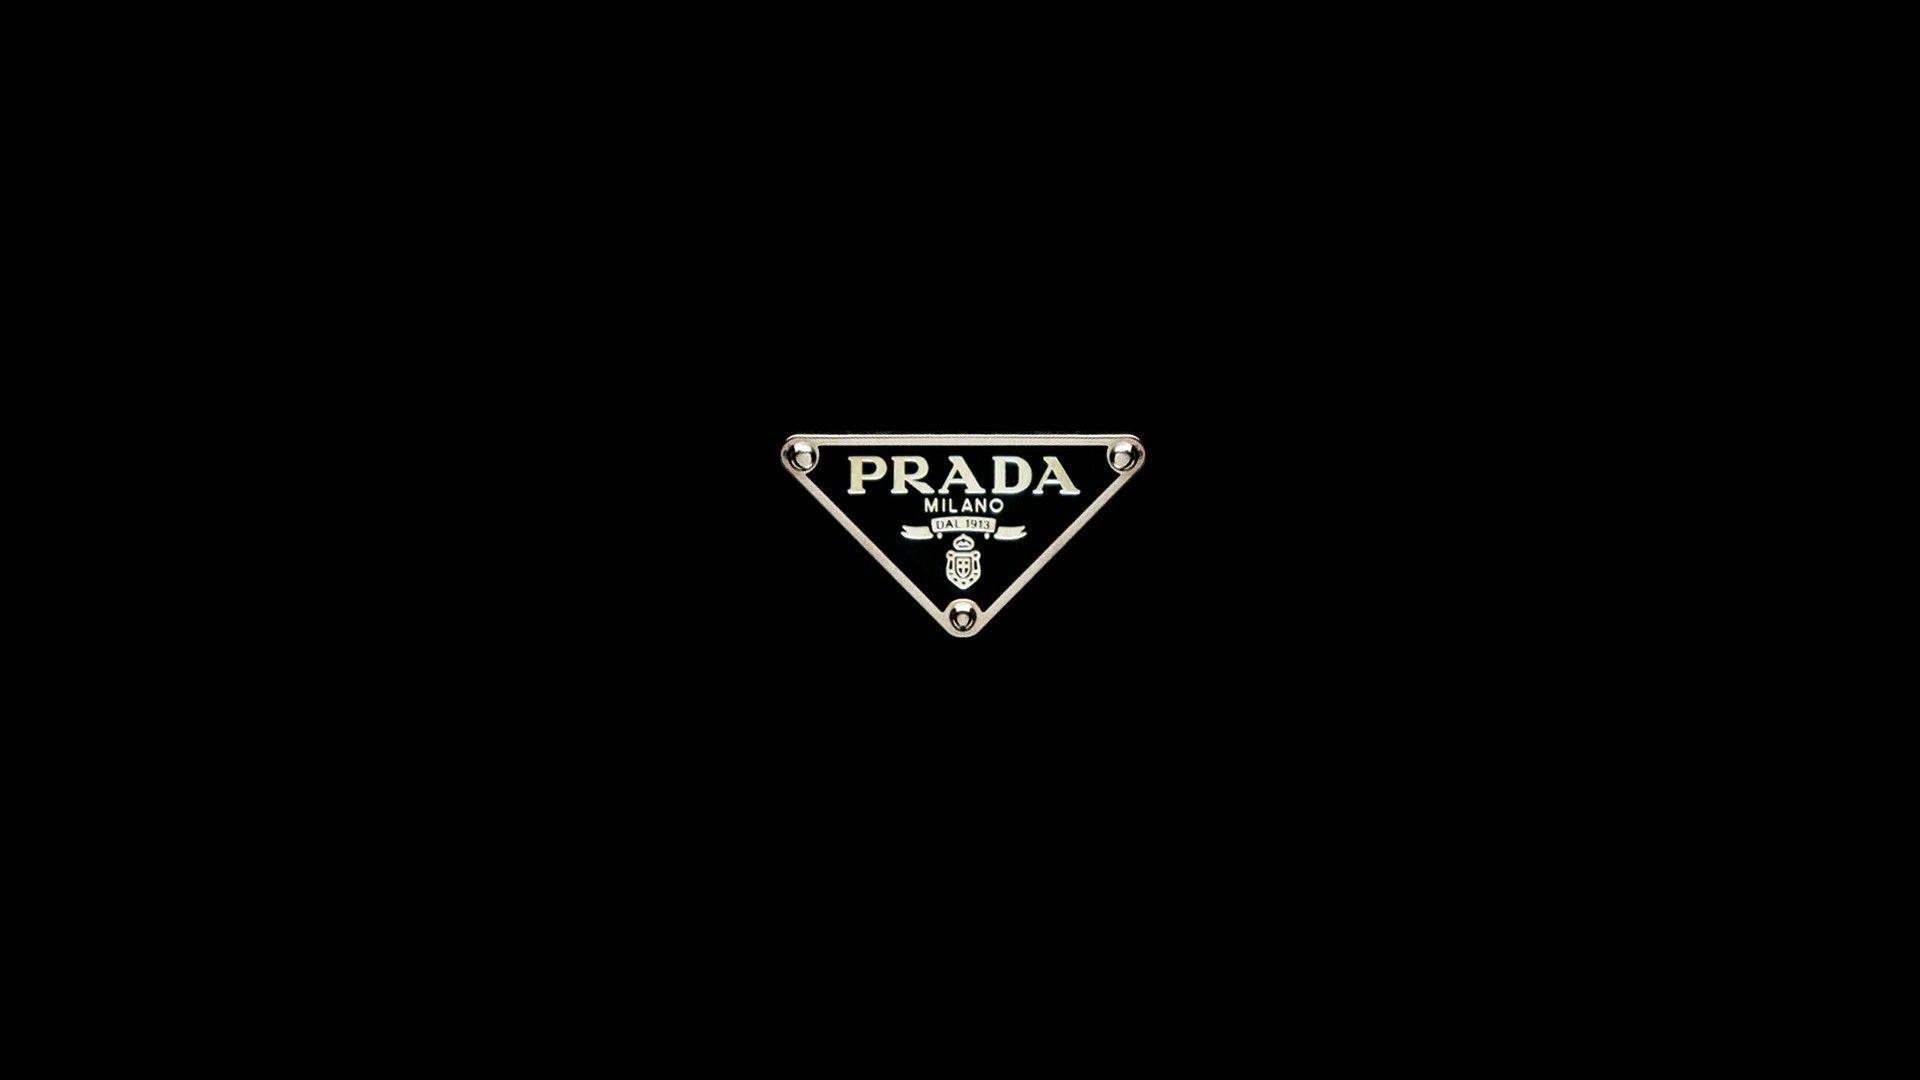 Prada Wallpapers Top Free Prada Backgrounds Wallpaperaccess